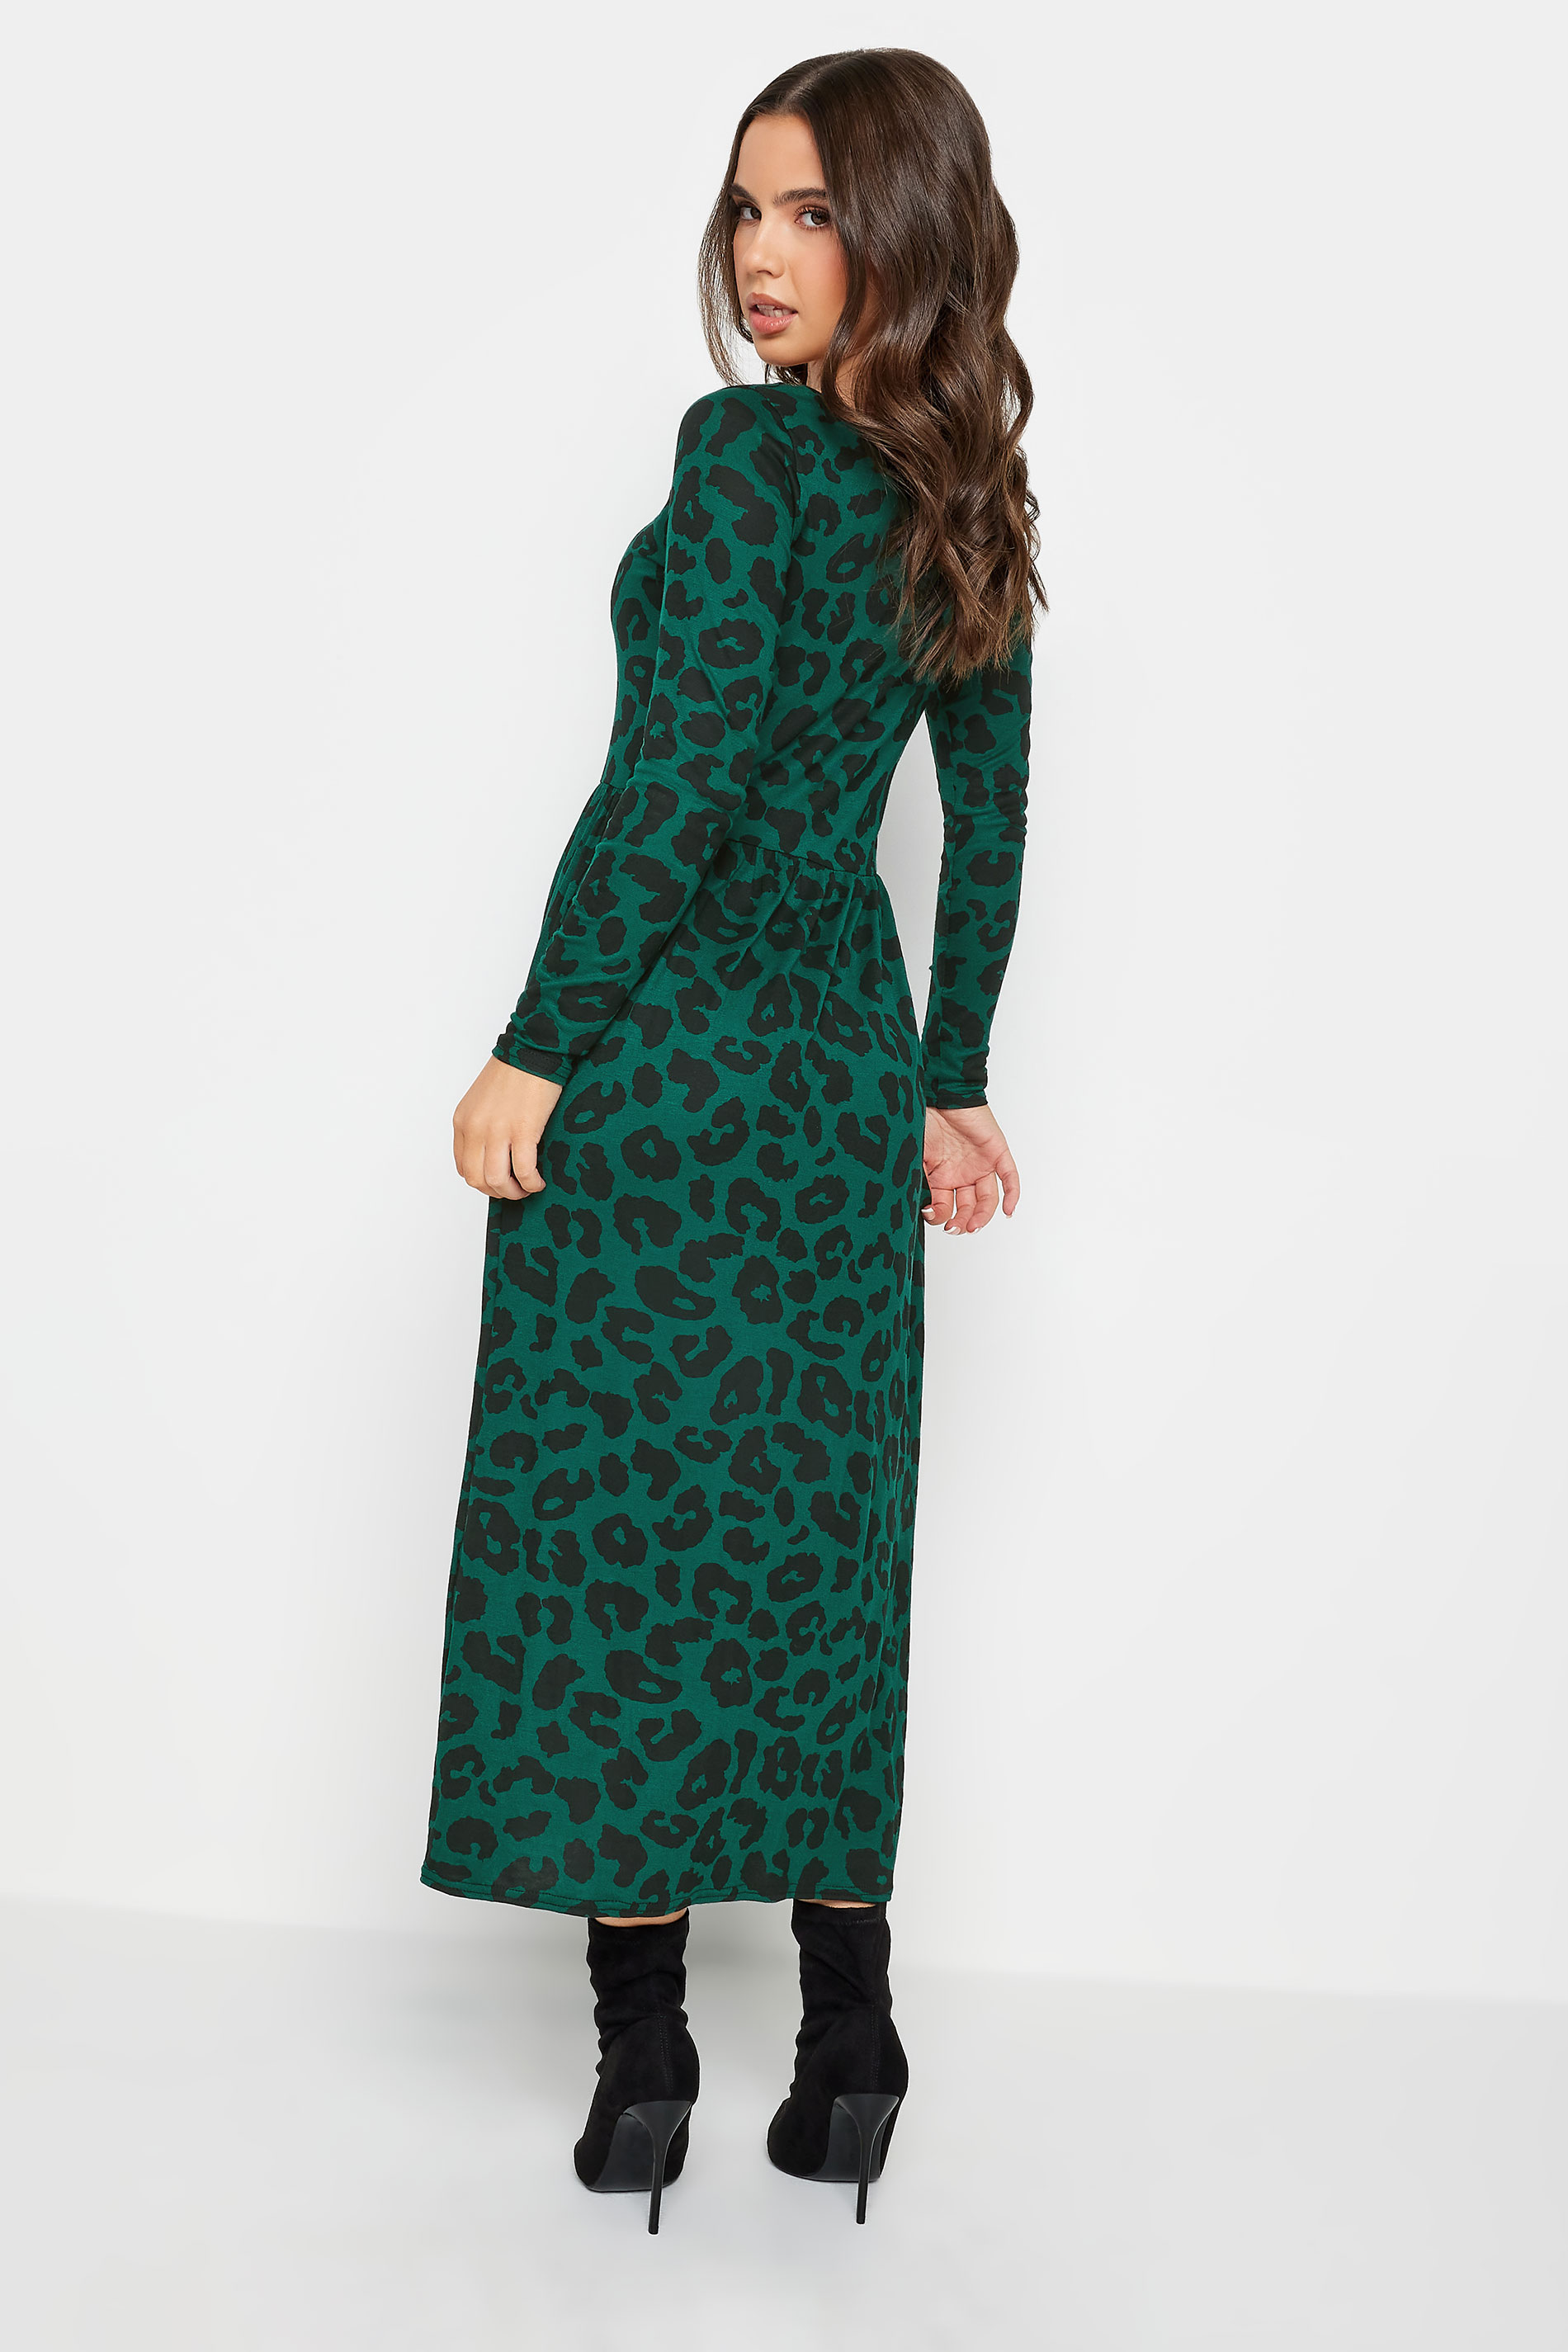 PixieGirl Petite Dark Green Leopard Print Long Sleeve Midi Dress | PixieGirl  3